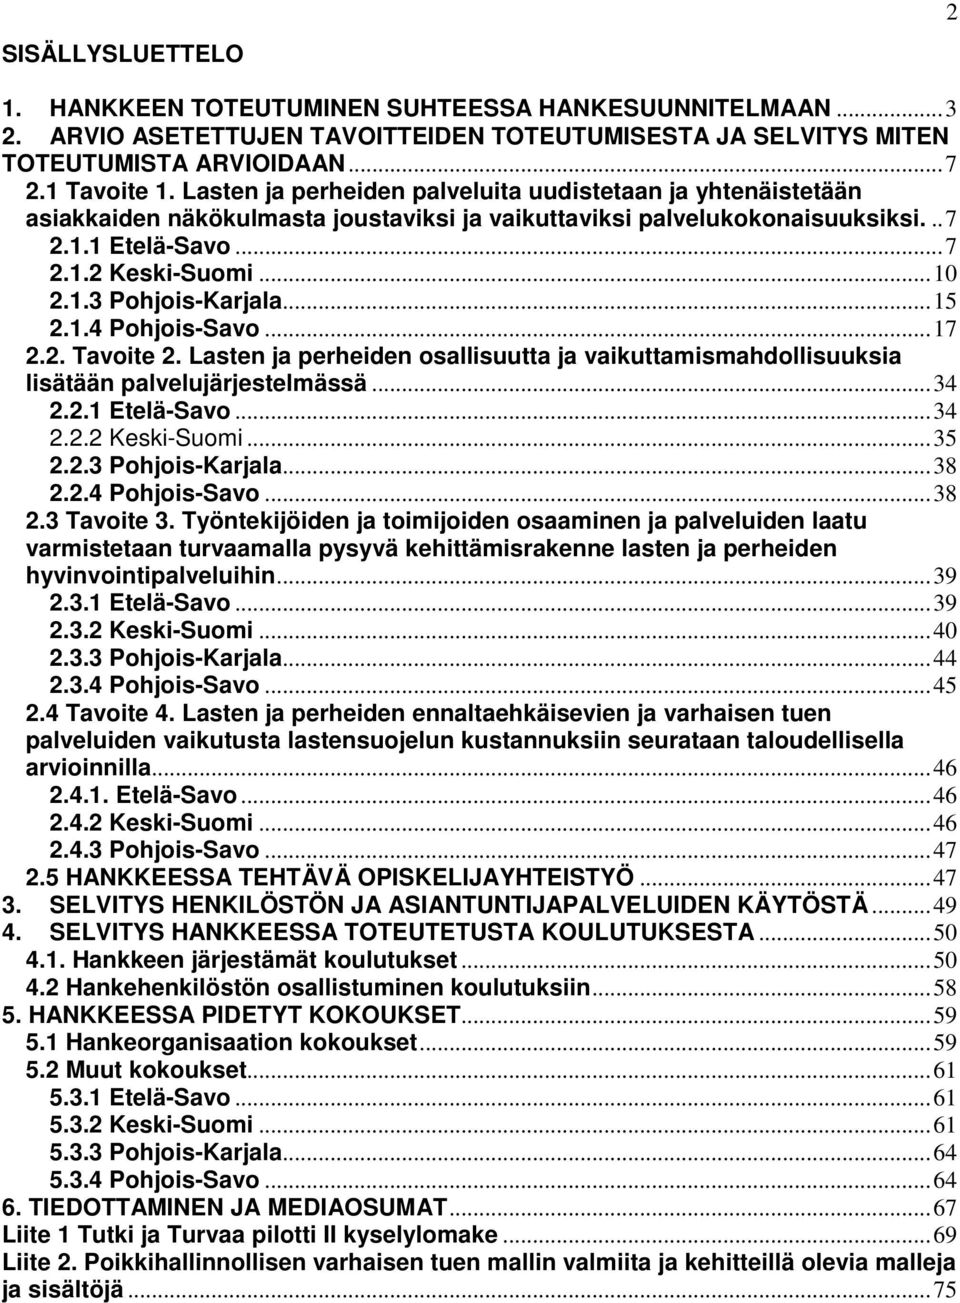 ..15 2.1.4 Pohjois-Savo...17 2.2. Tavoite 2. Lasten ja perheiden osallisuutta ja vaikuttamismahdollisuuksia lisätään palvelujärjestelmässä...34 2.2.1 Etelä-Savo...34 2.2.2 Keski-Suomi...35 2.2.3 Pohjois-Karjala.